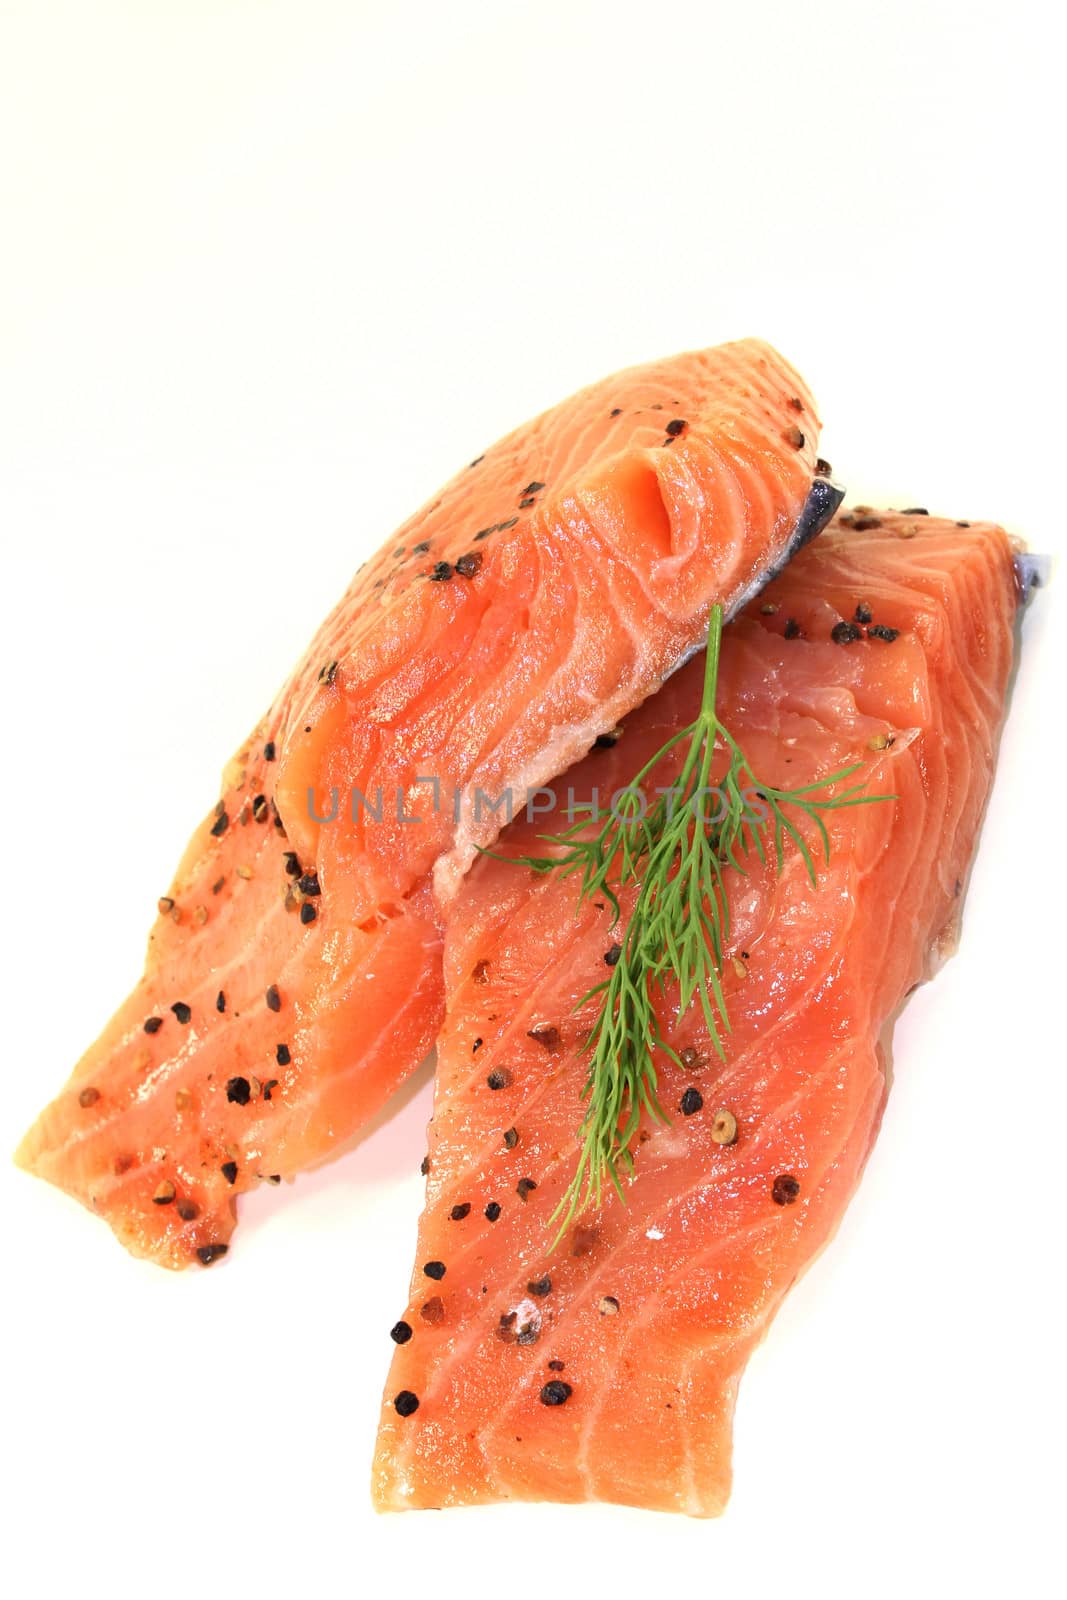 Salmon by silencefoto